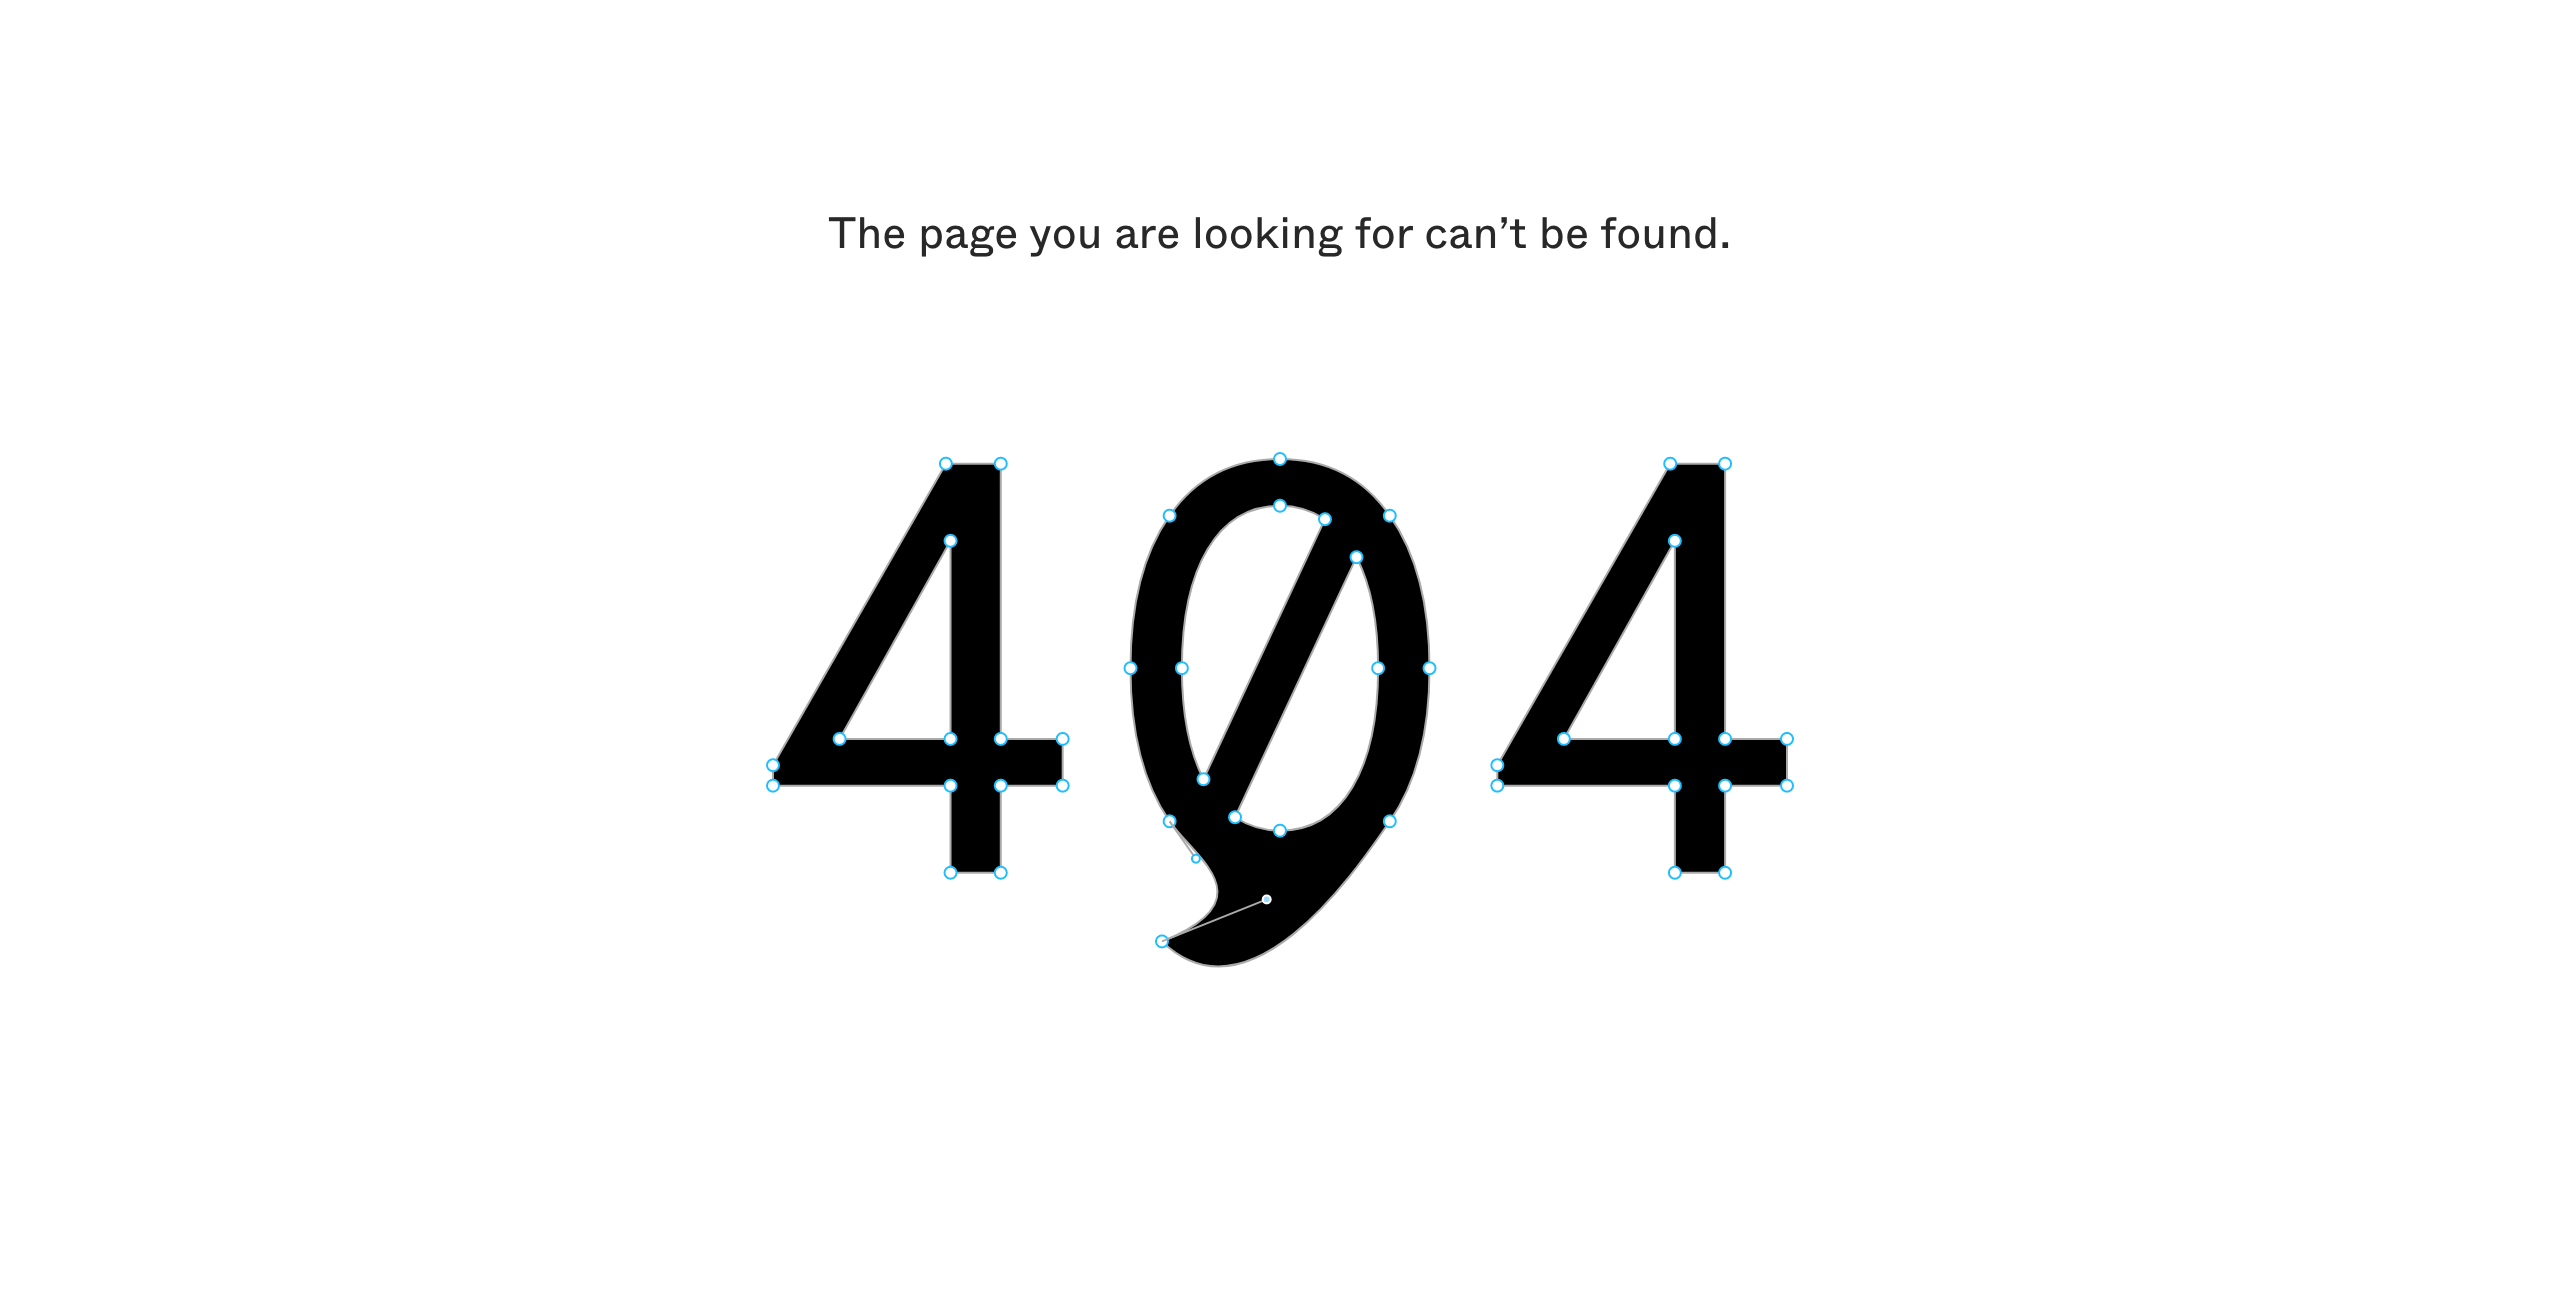 Ошибка 404: что это и как может выглядеть. Пример №4 — сайт графического редактора Figma